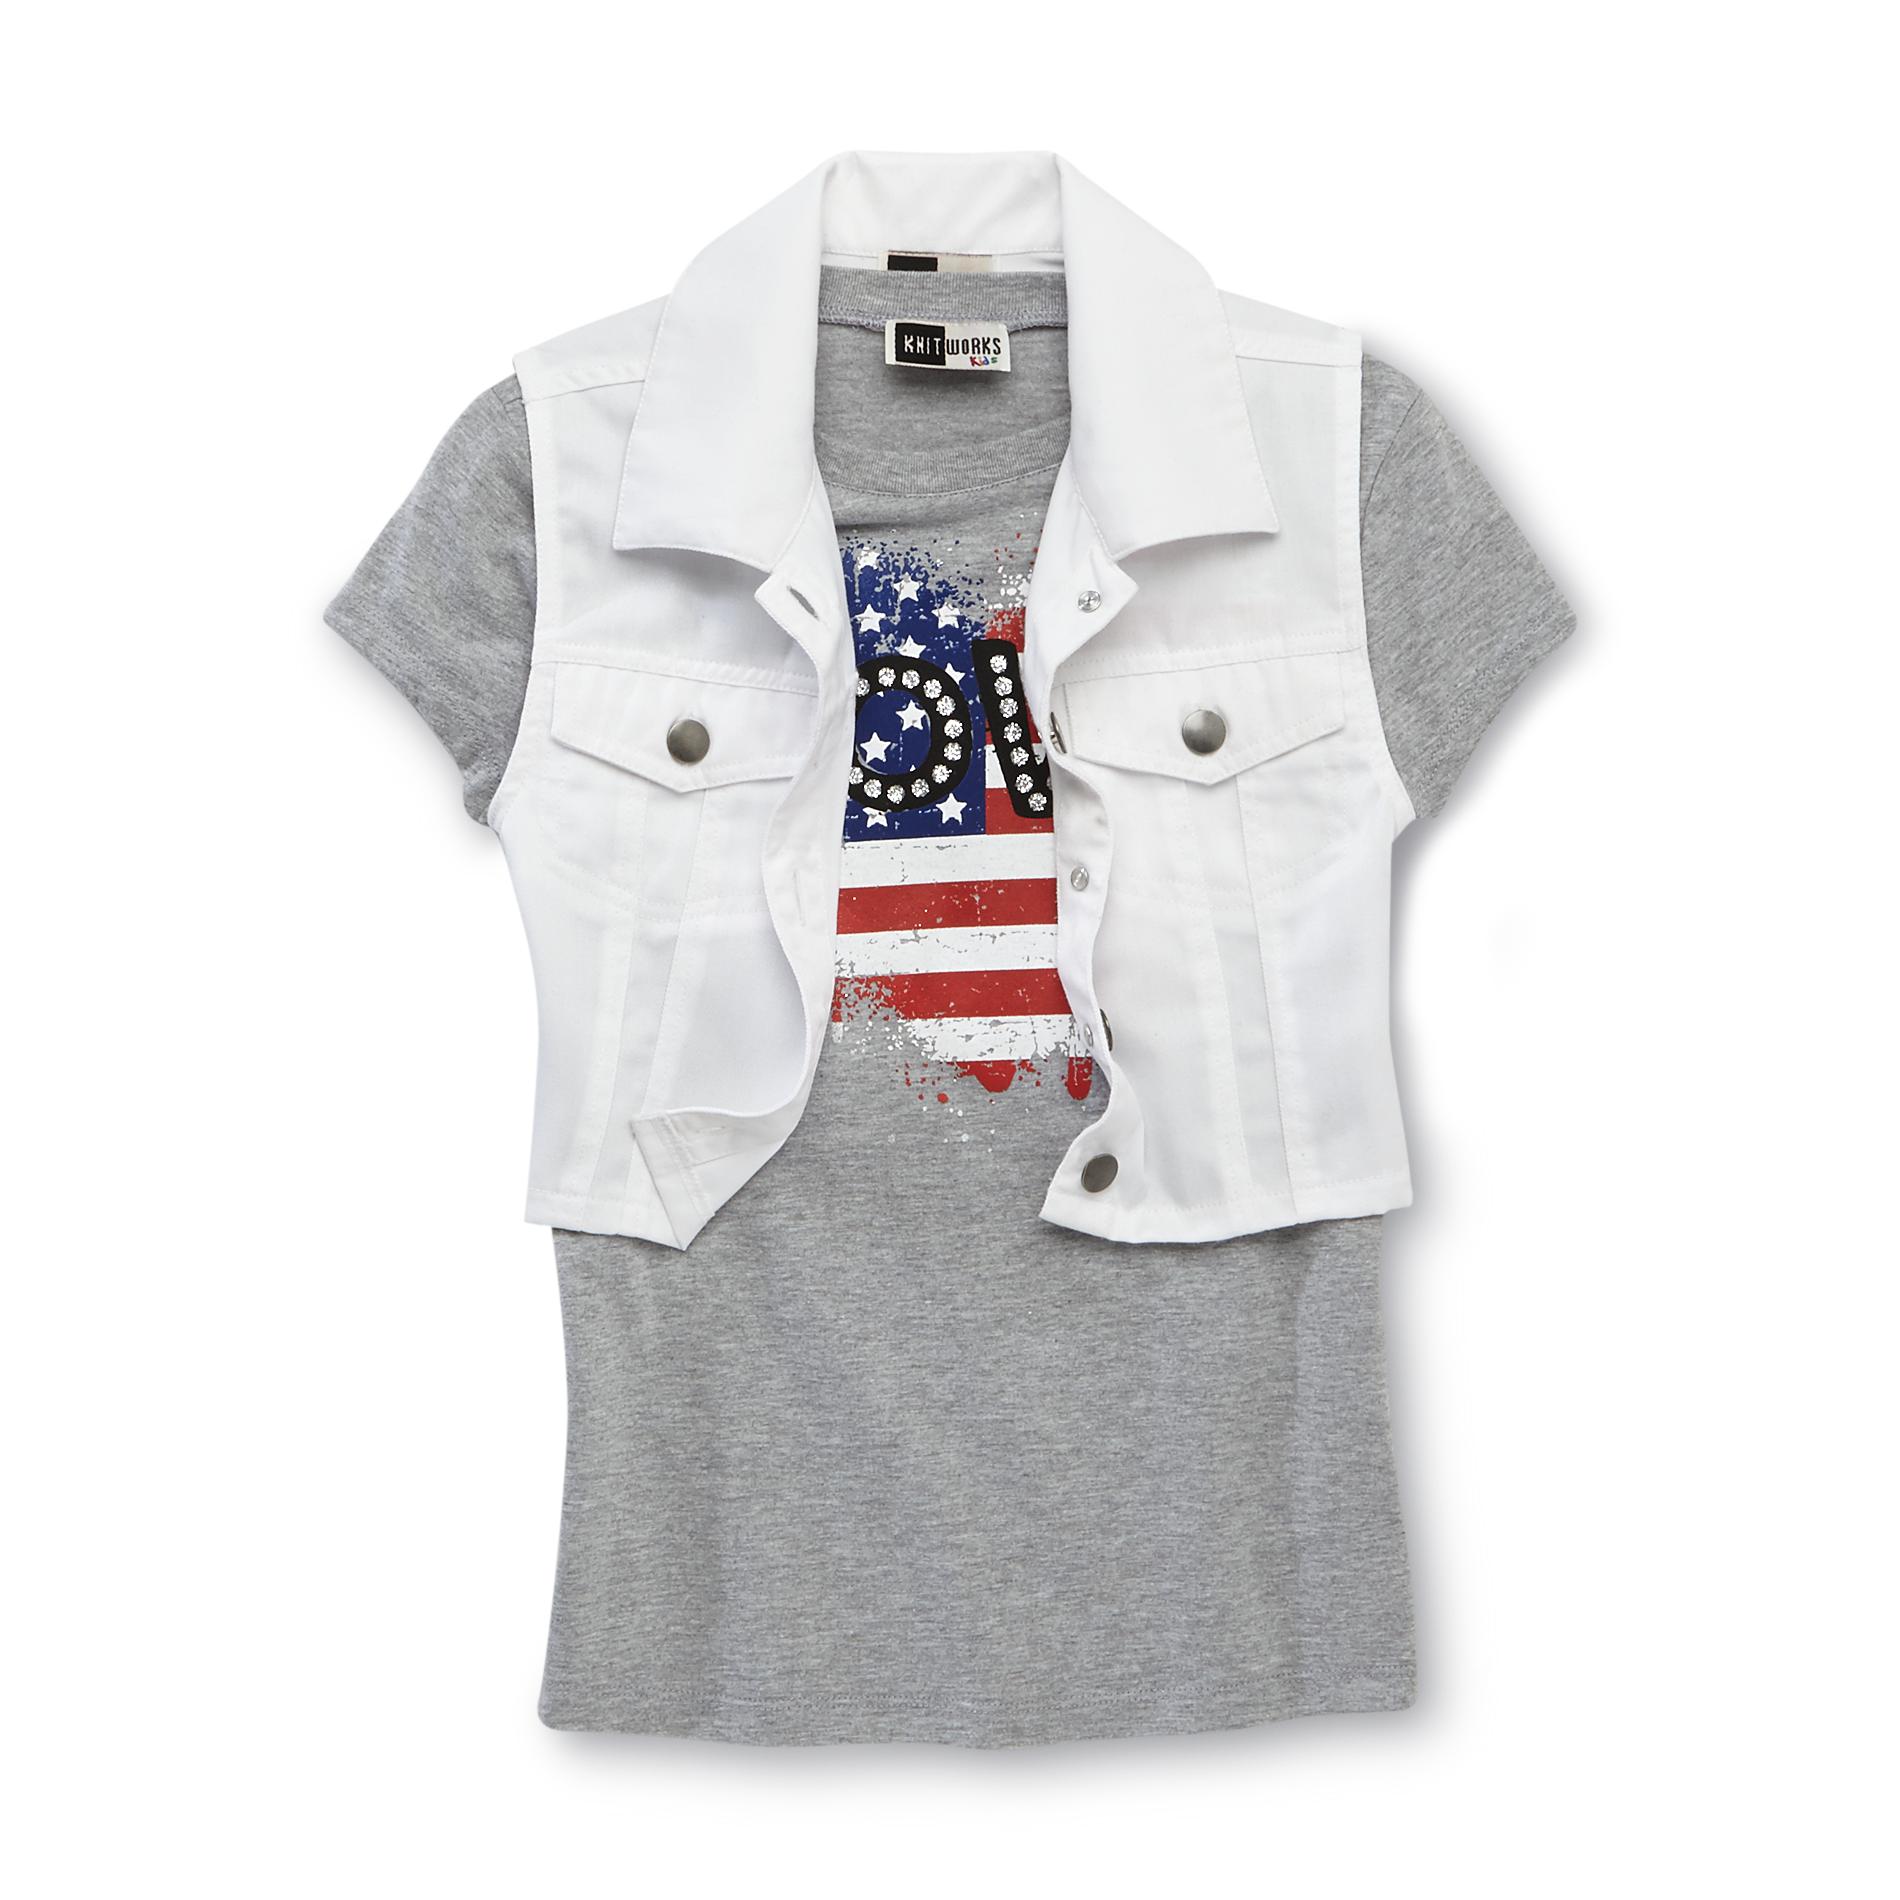 Knitworks Kids Girl's Vest & Glittered T-Shirt - Flag Heart